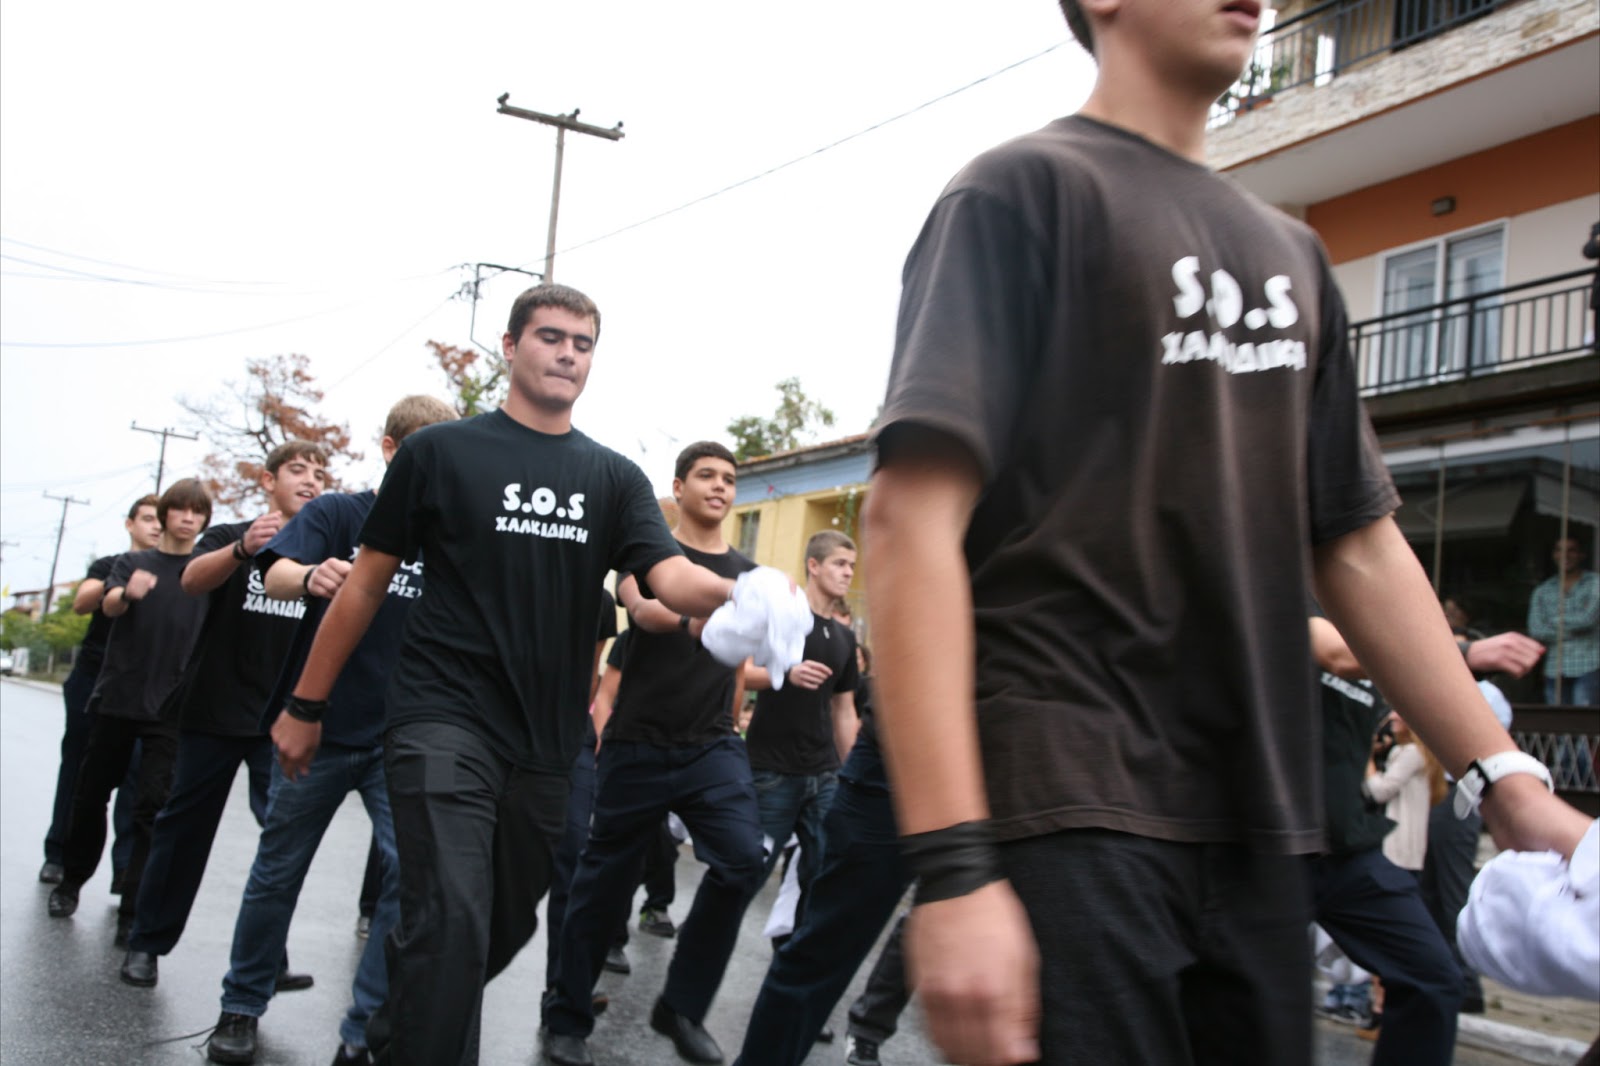 28η Οκτωβρίου 2012 Ιερισσός, Μία παρέλαση με νόημα (video και φωτογραφίες)